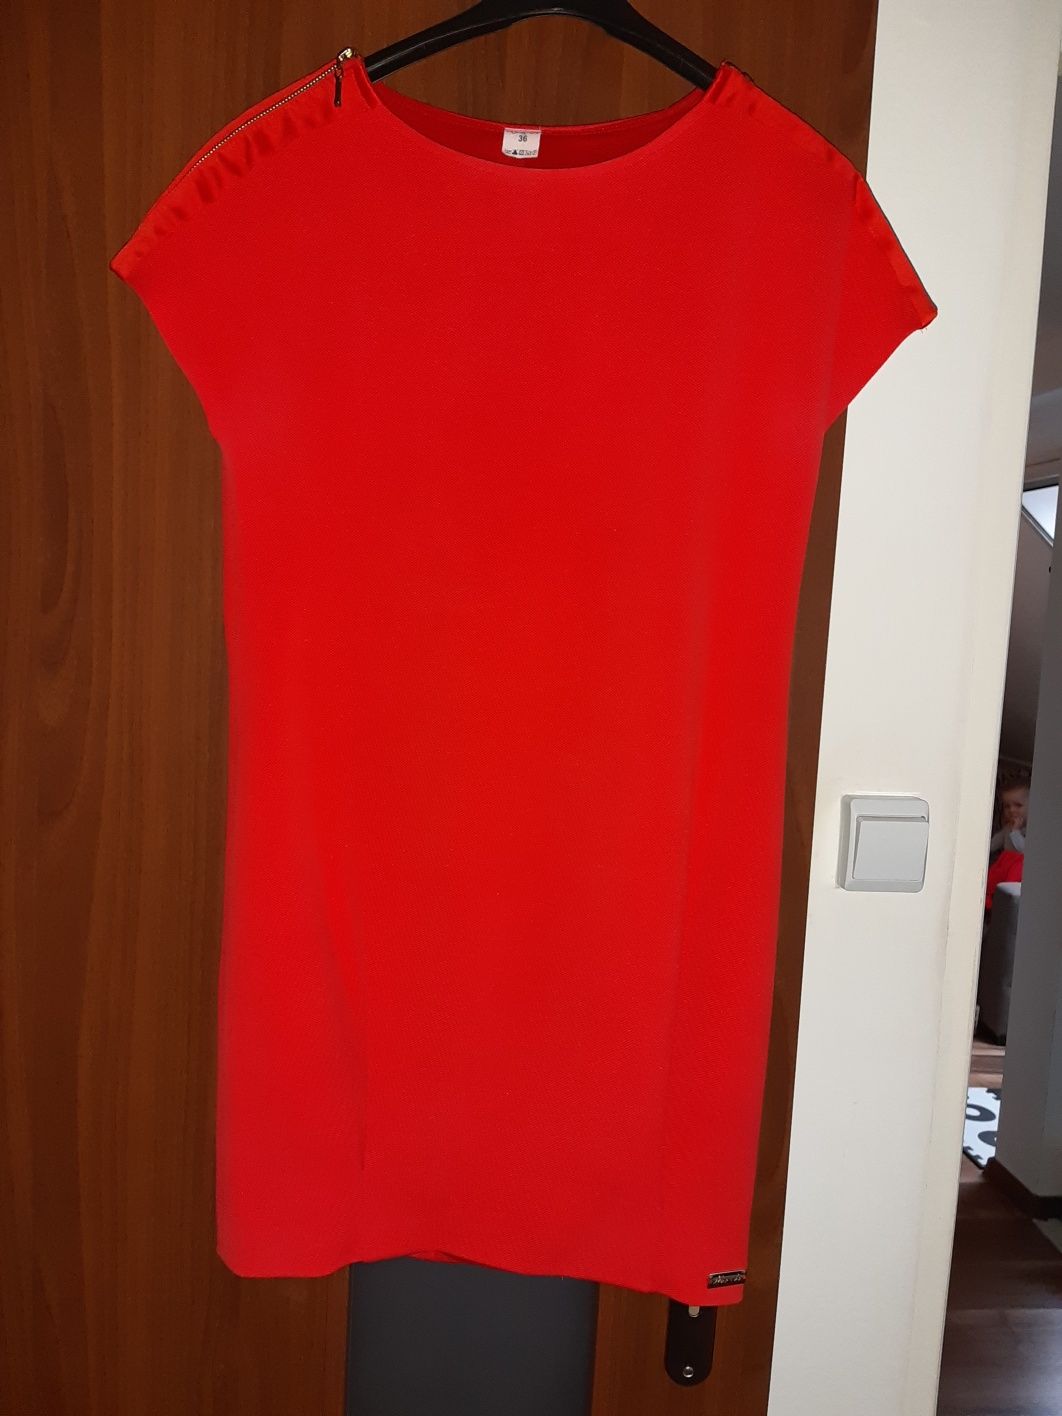 Sukienka czerwona roz. 36